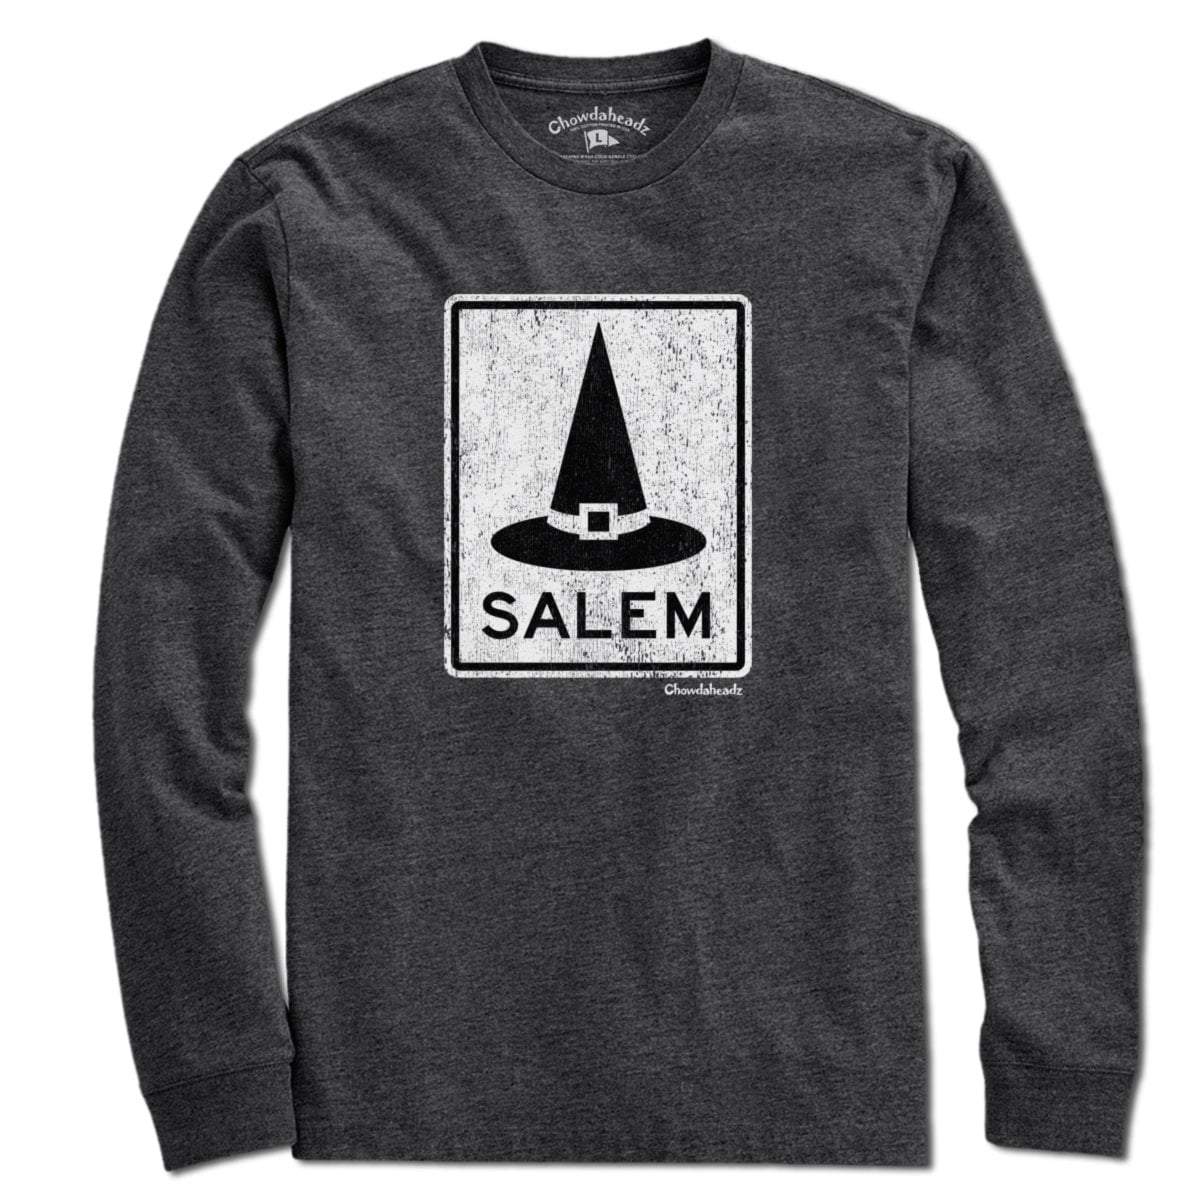 Salem MA Witch Hat Sign T-Shirt - Chowdaheadz